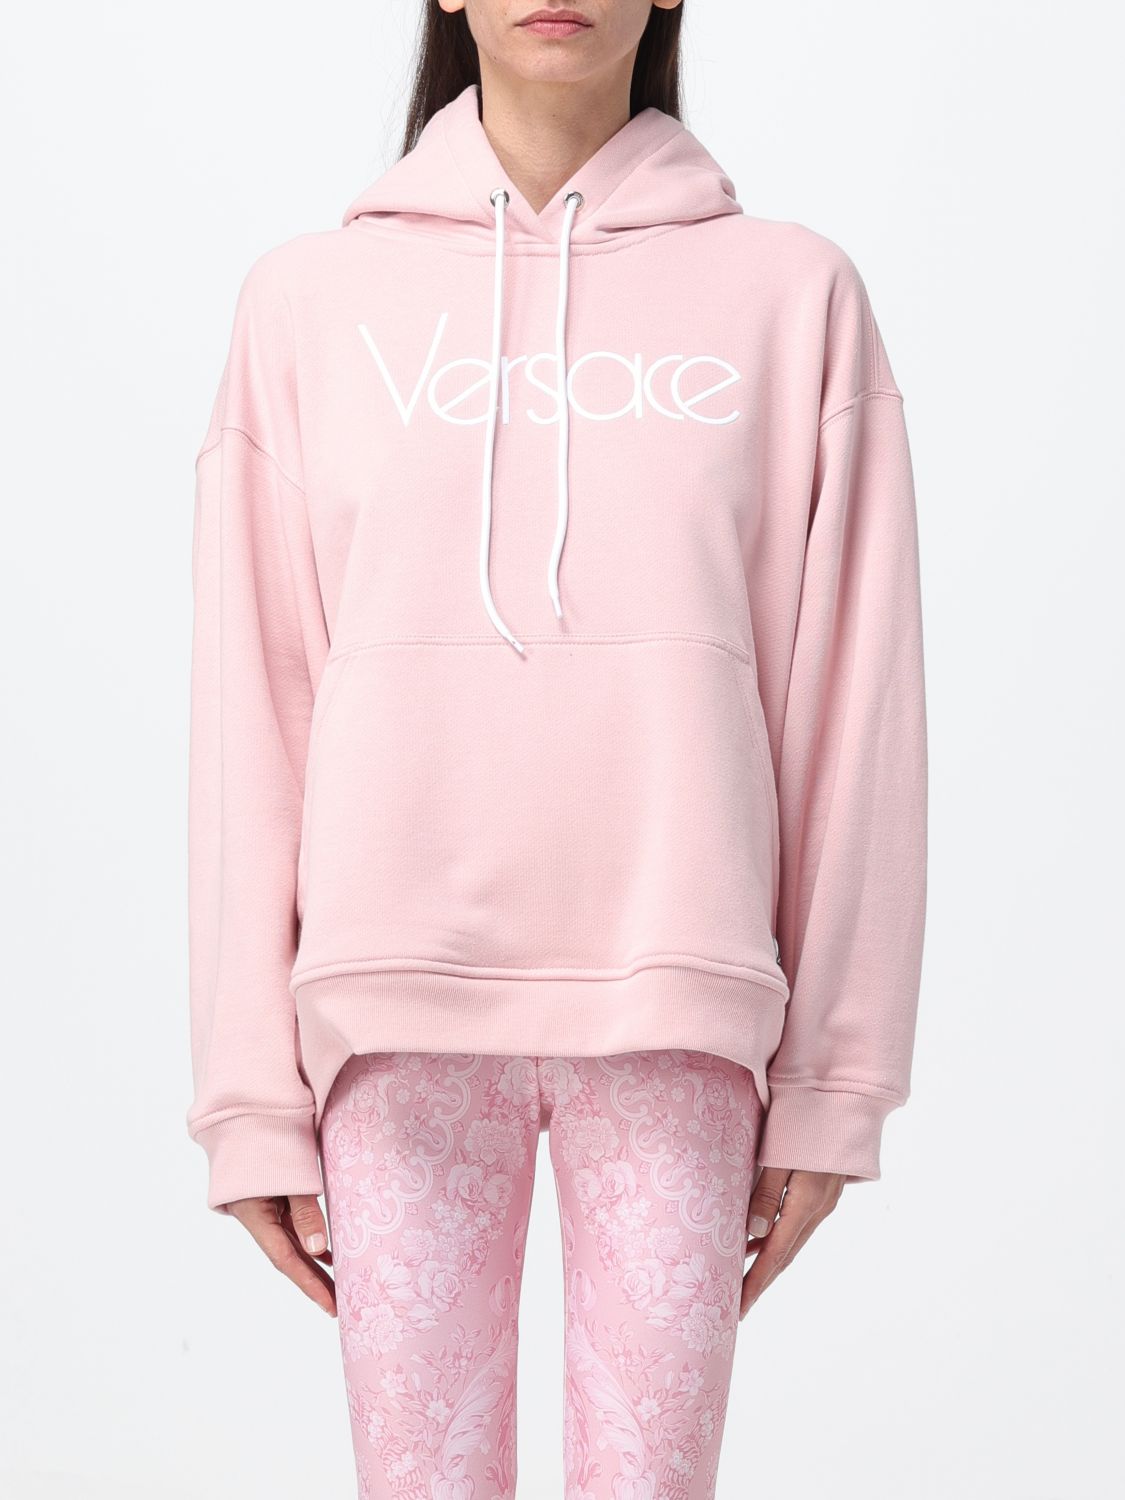 Versace Sweatshirt  Woman Color Pink